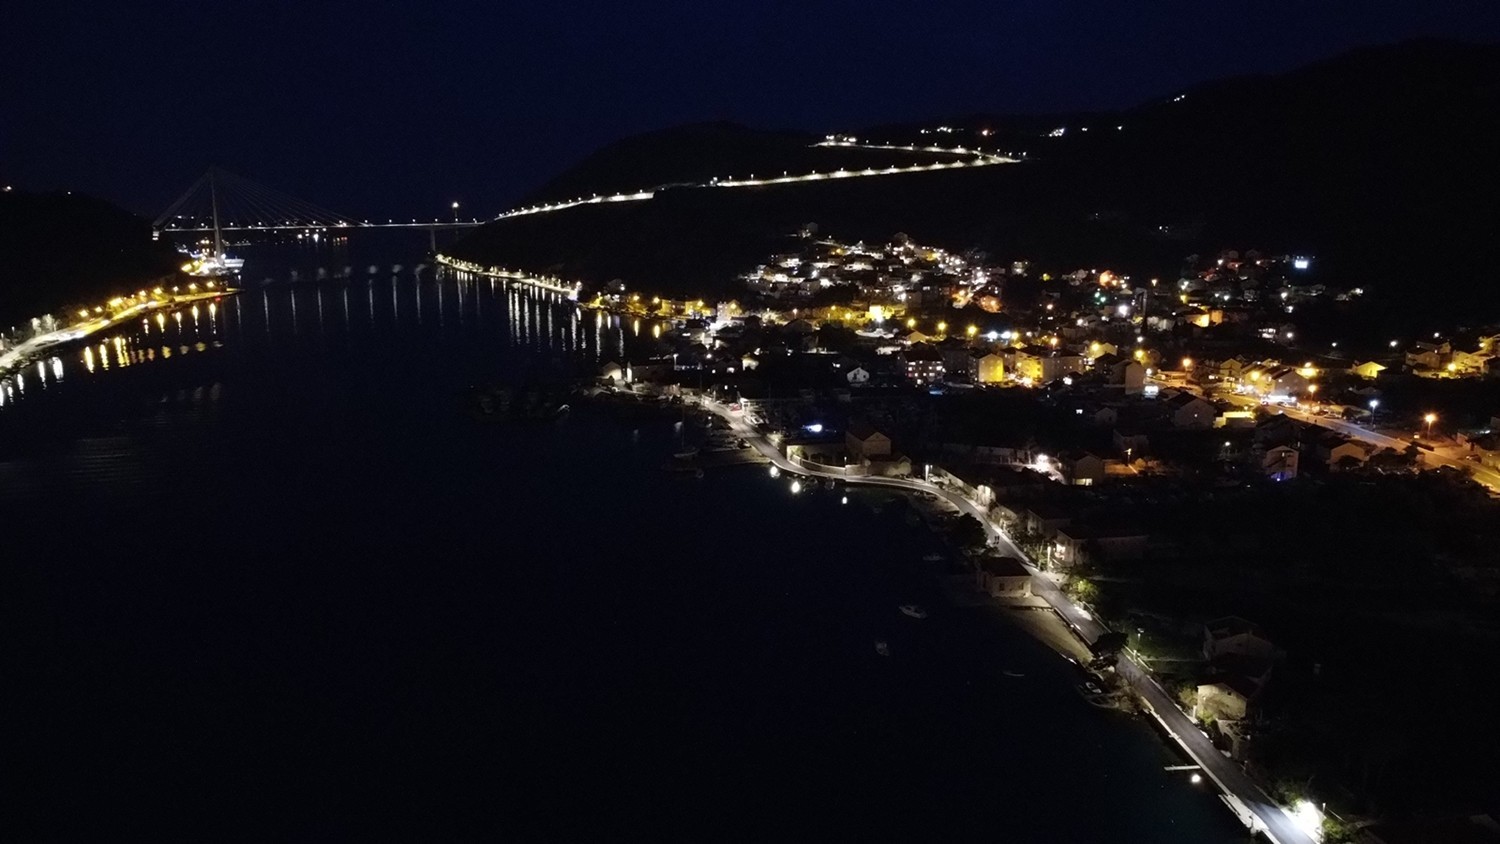 Održano javno otvaranje ponuda u postupku Modernizacija javne rasvjete Grada Dubrovnika